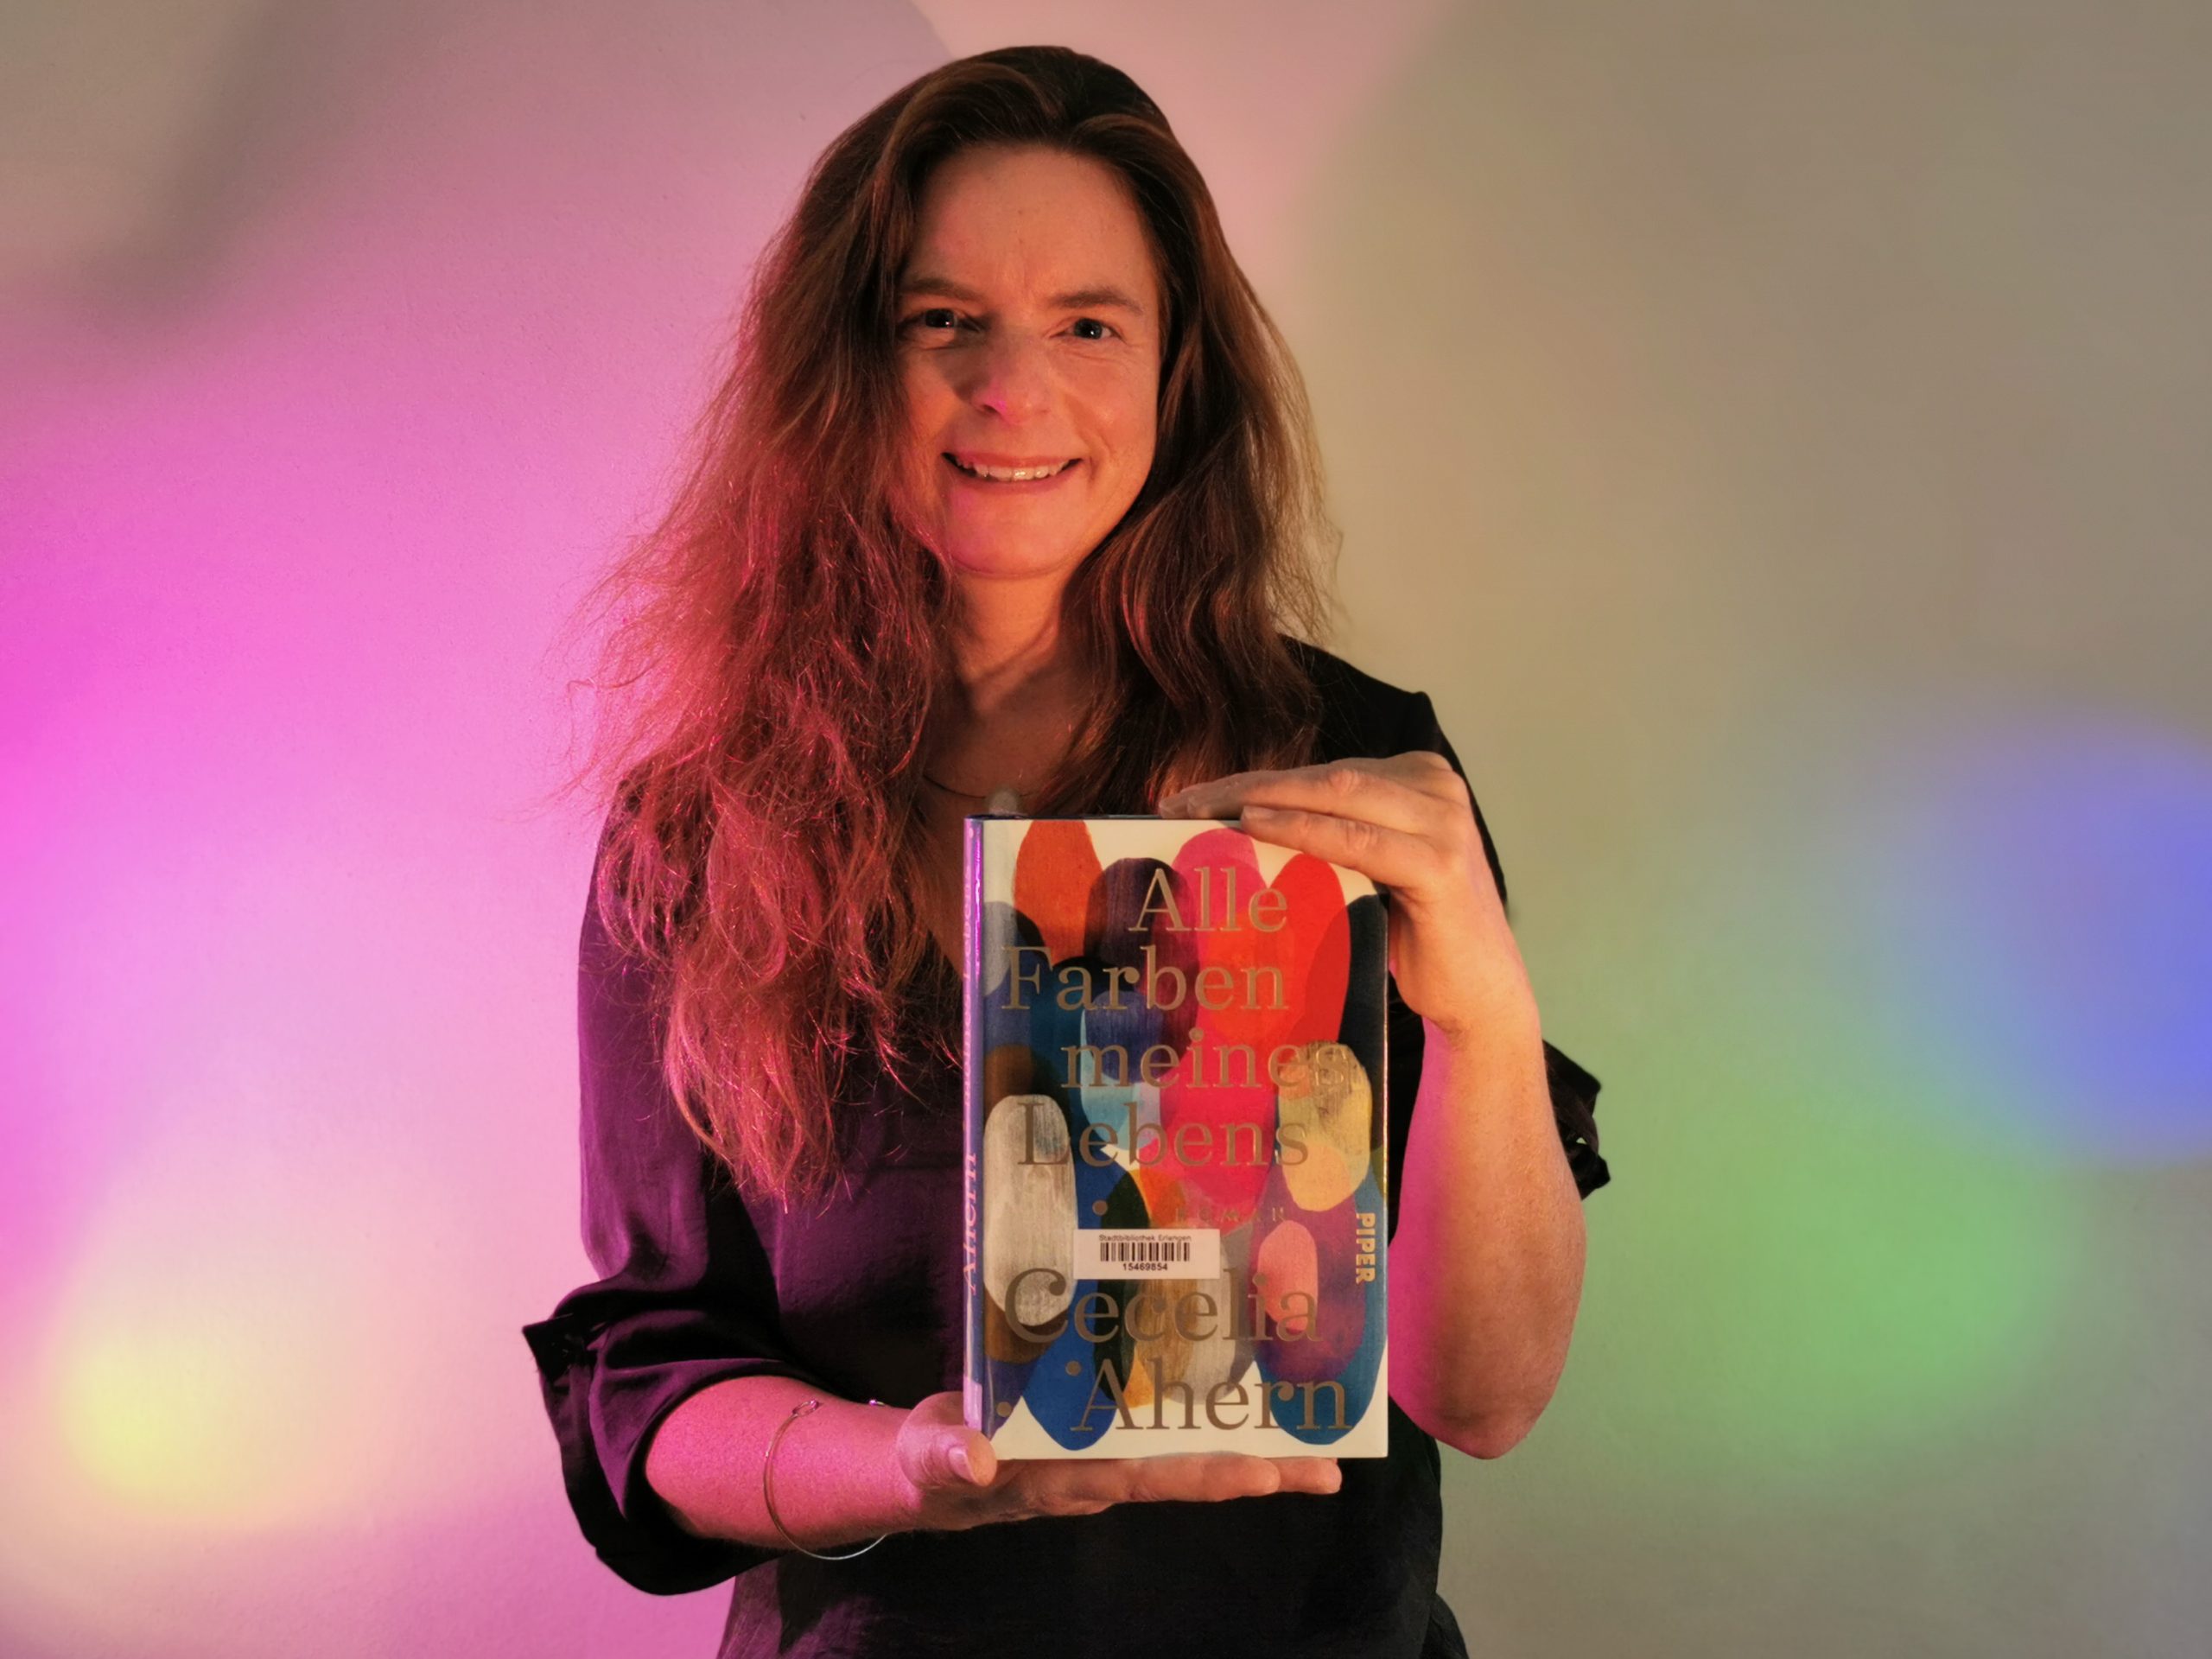 Karin empfiehlt Buch "Alle Farben meines Lebens" von Cecelia Ahern